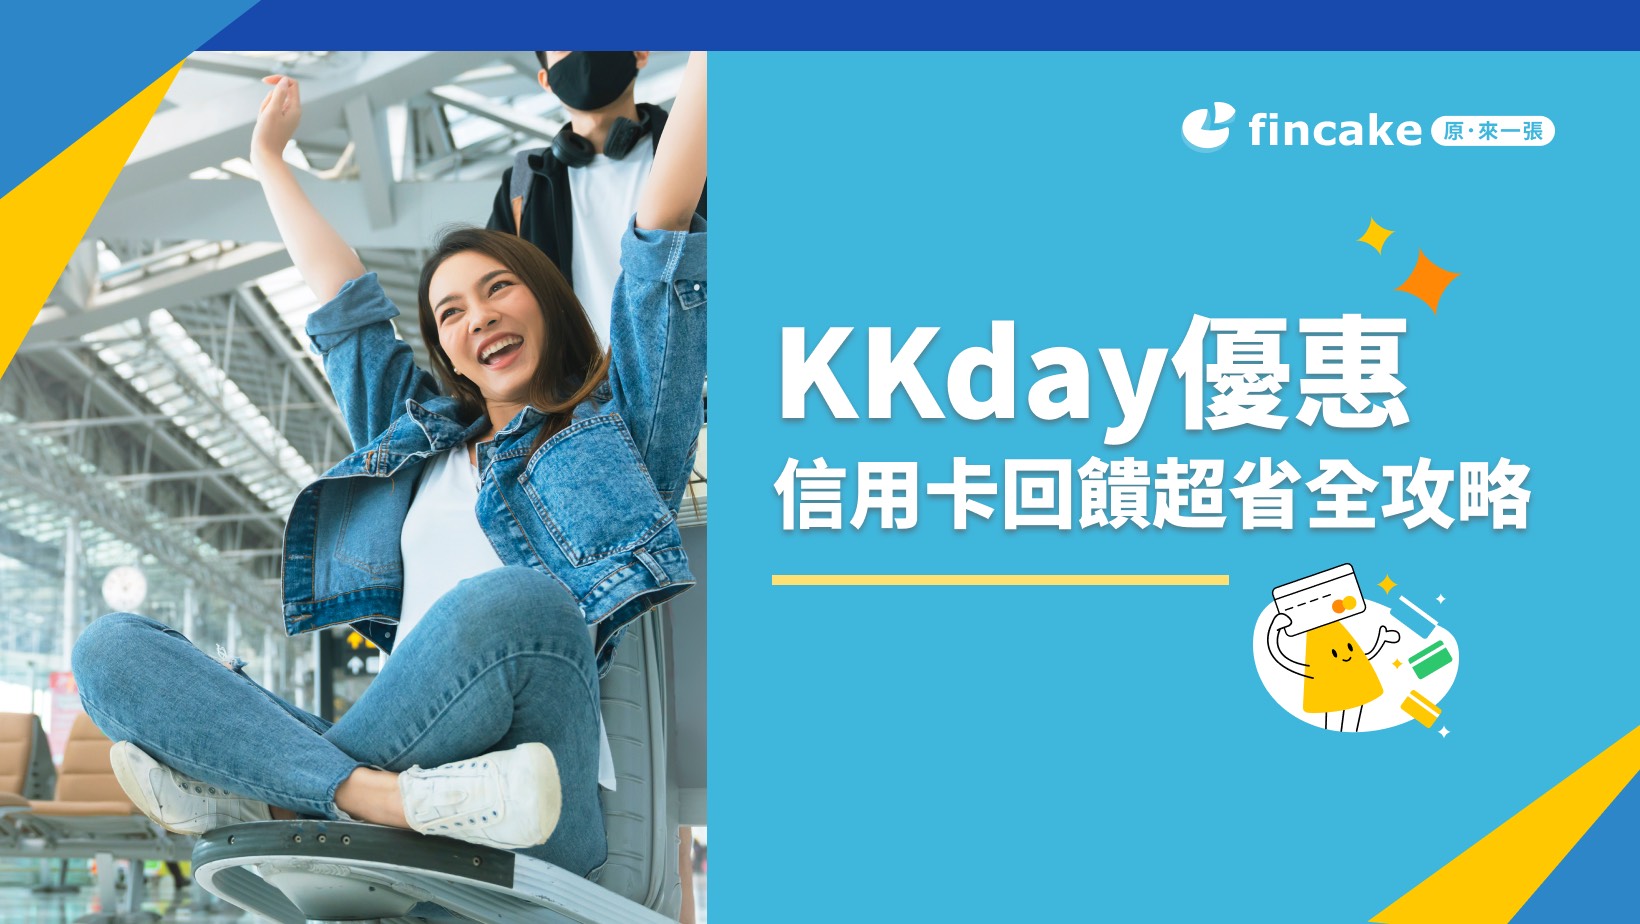 KKday優惠 信用卡回饋超省全攻略